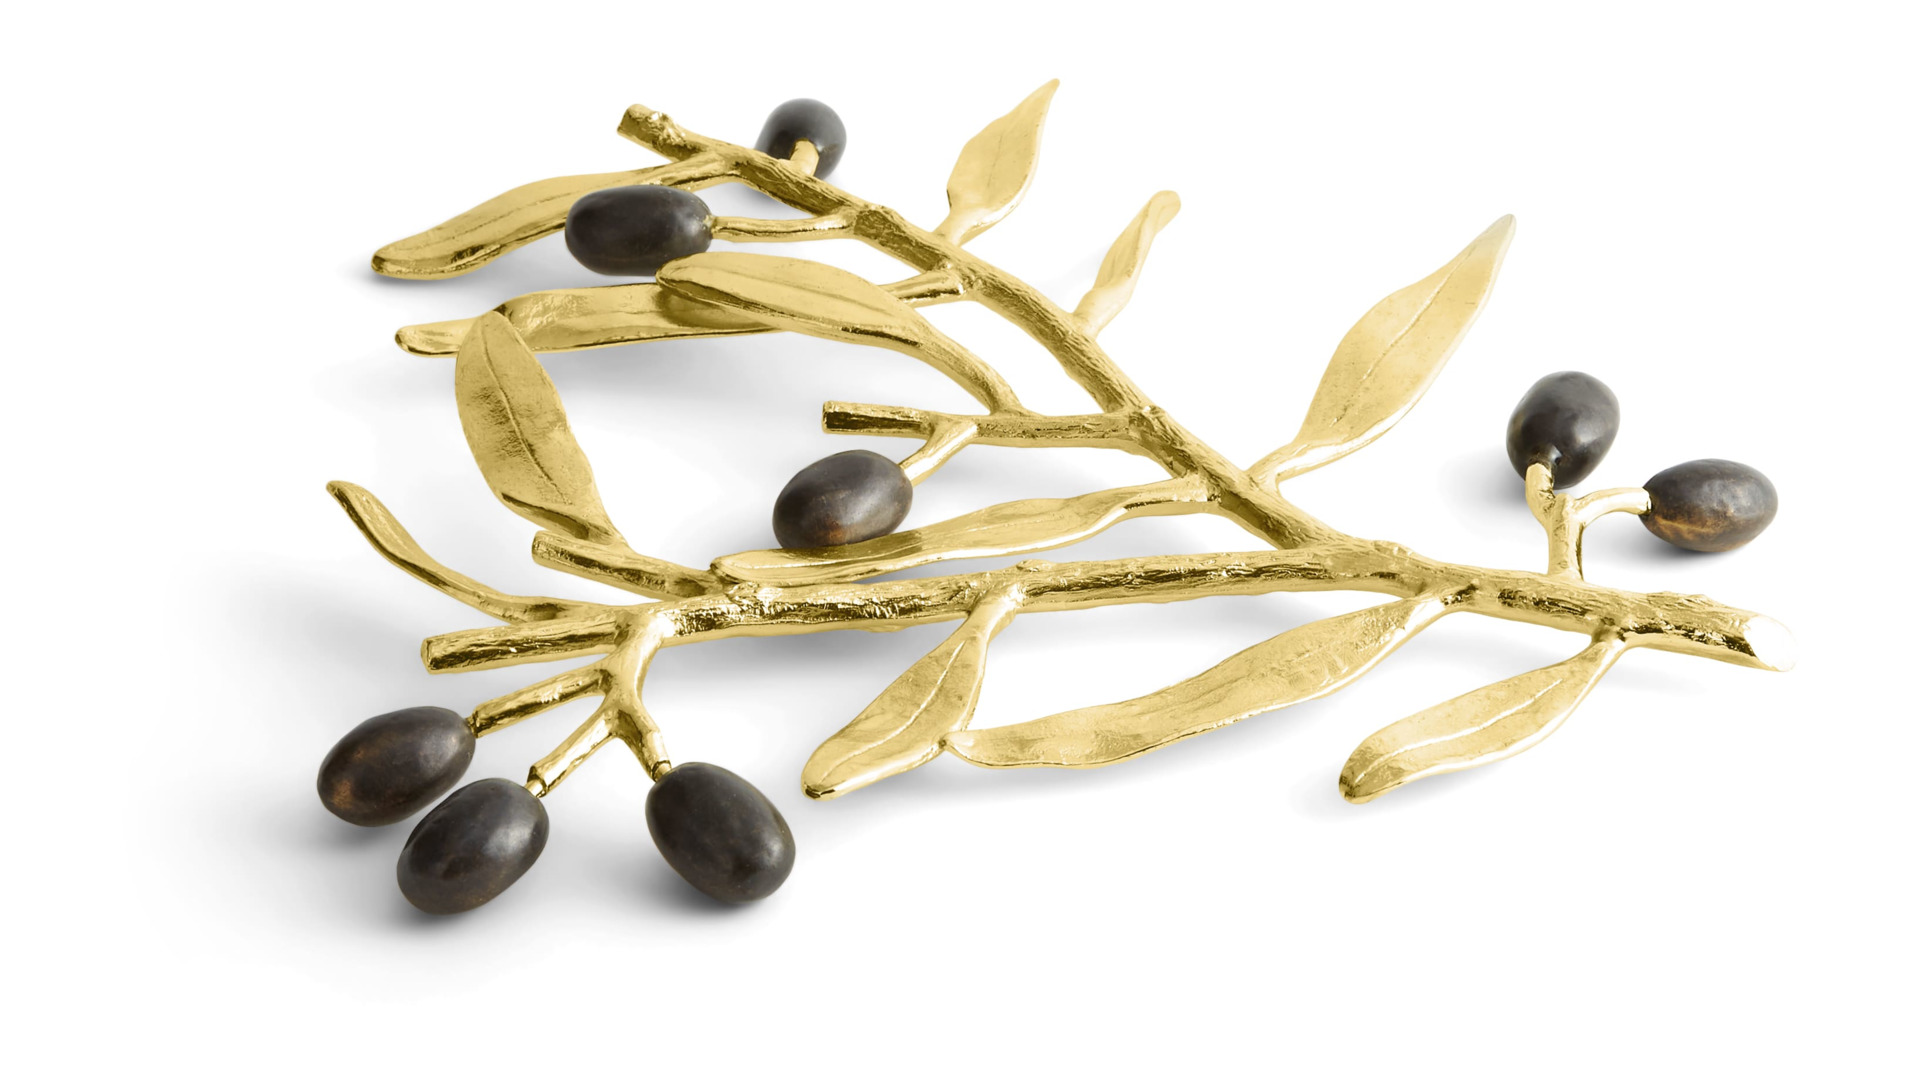 Подставка под горячее Michael Aram Золотая оливковая ветвь 25 см, латунь, золотистая